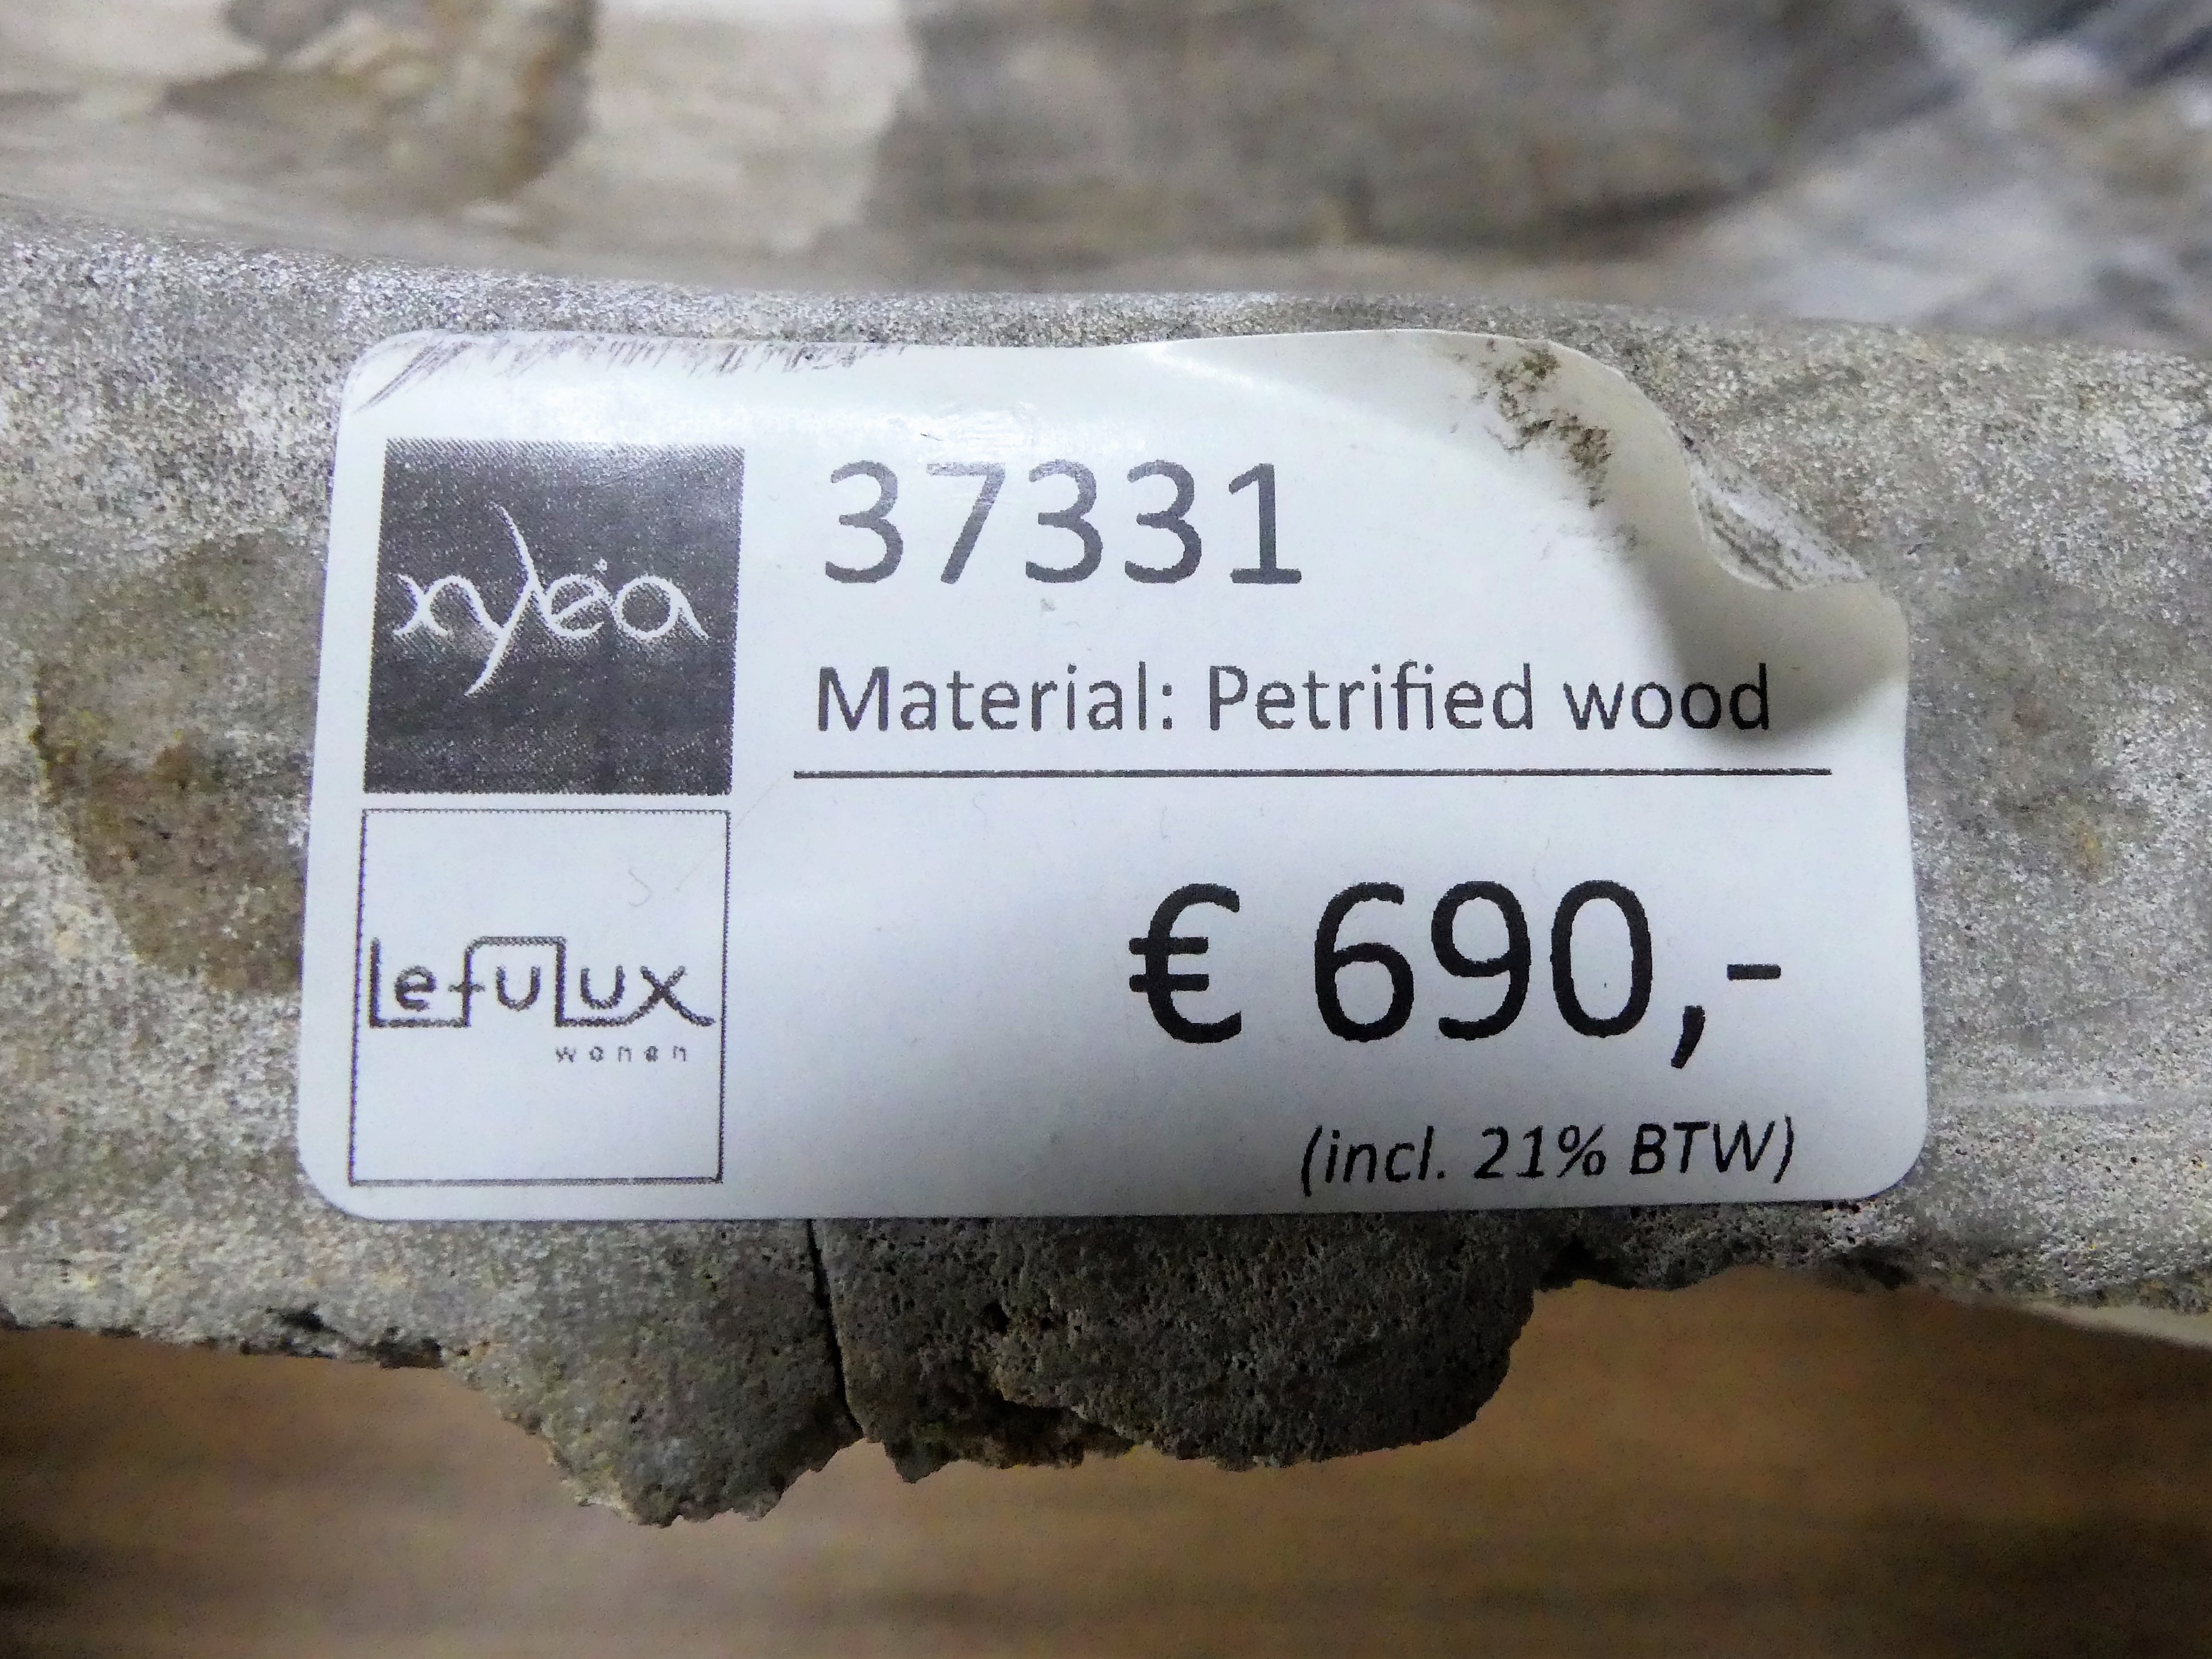 Xyleia wastafel van versteend hout (€ 690,-)